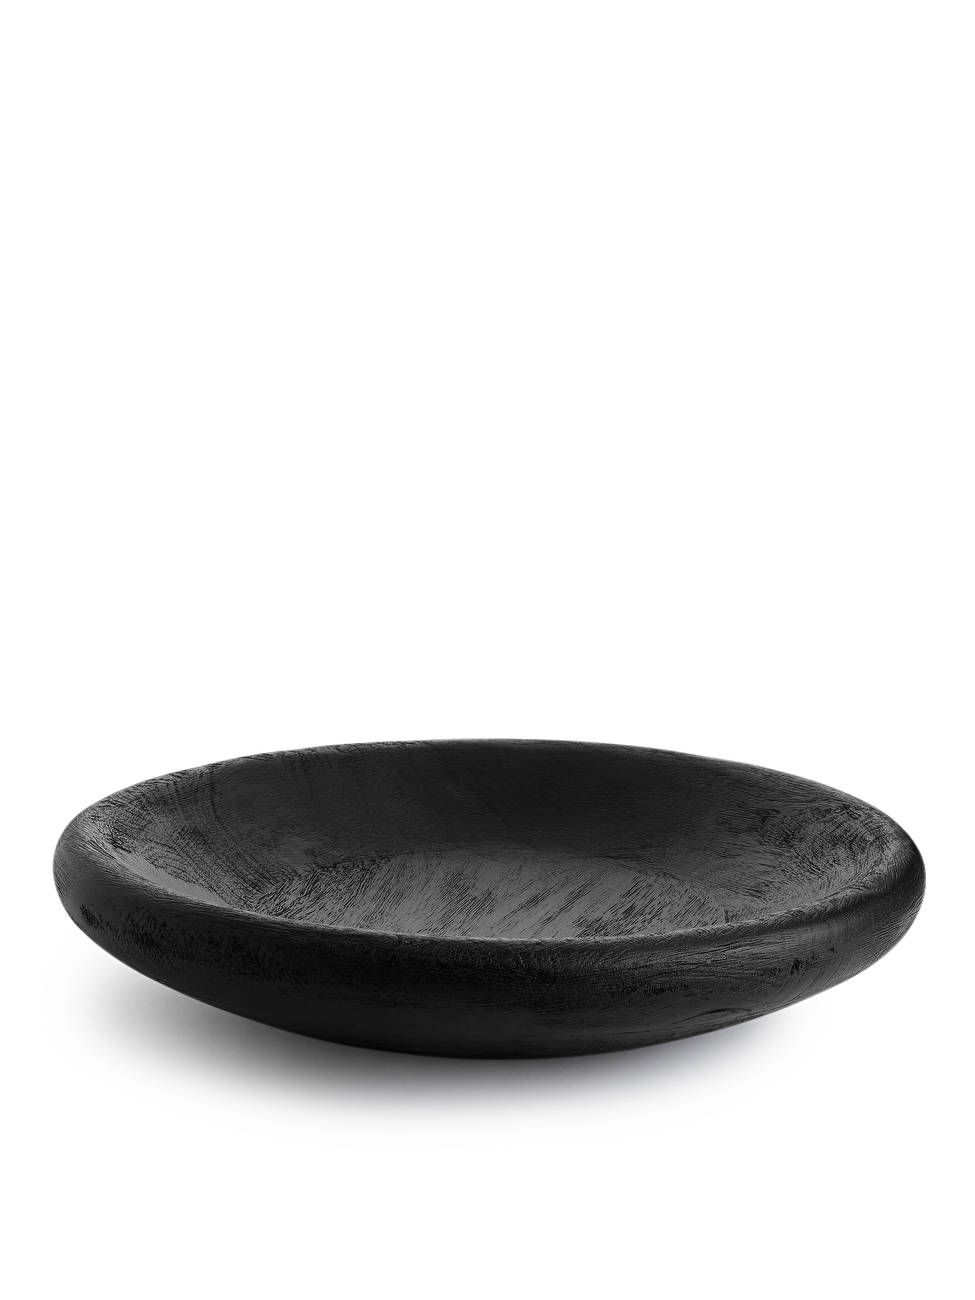 Wooden Serving Bowl - Black - ARKET GB | ARKET